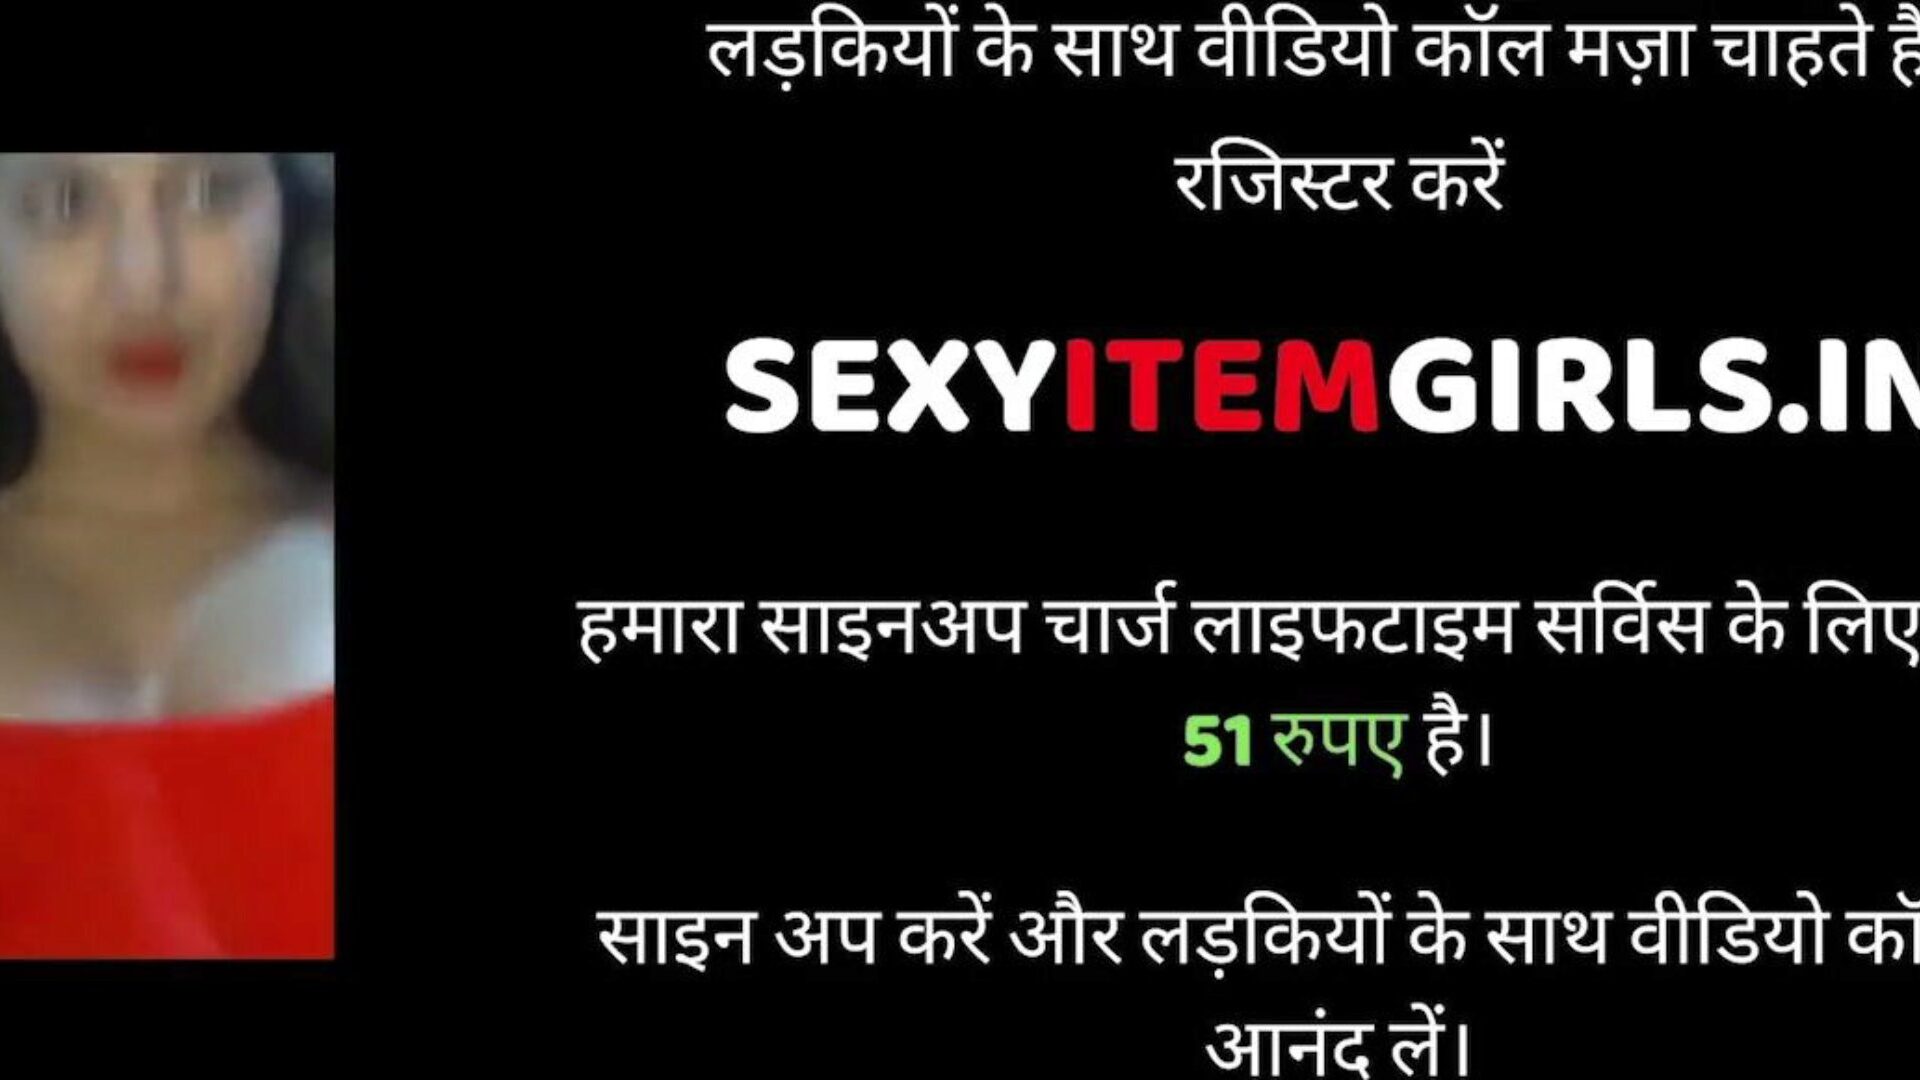 الجنس الهندي للزوج والزوجة ، الجنس المجاني xnxx porn 95: xhamster شاهد الزوج والزوجة الهندي الفيديو الجنسي على xhamster ، الموقع الأكثر سمنة لأنابيب سنام عالية الدقة مع أطنان من الجنس مجانا للجميع xnxx المتشددين ونائب الرئيس في كس الأفلام الإباحية